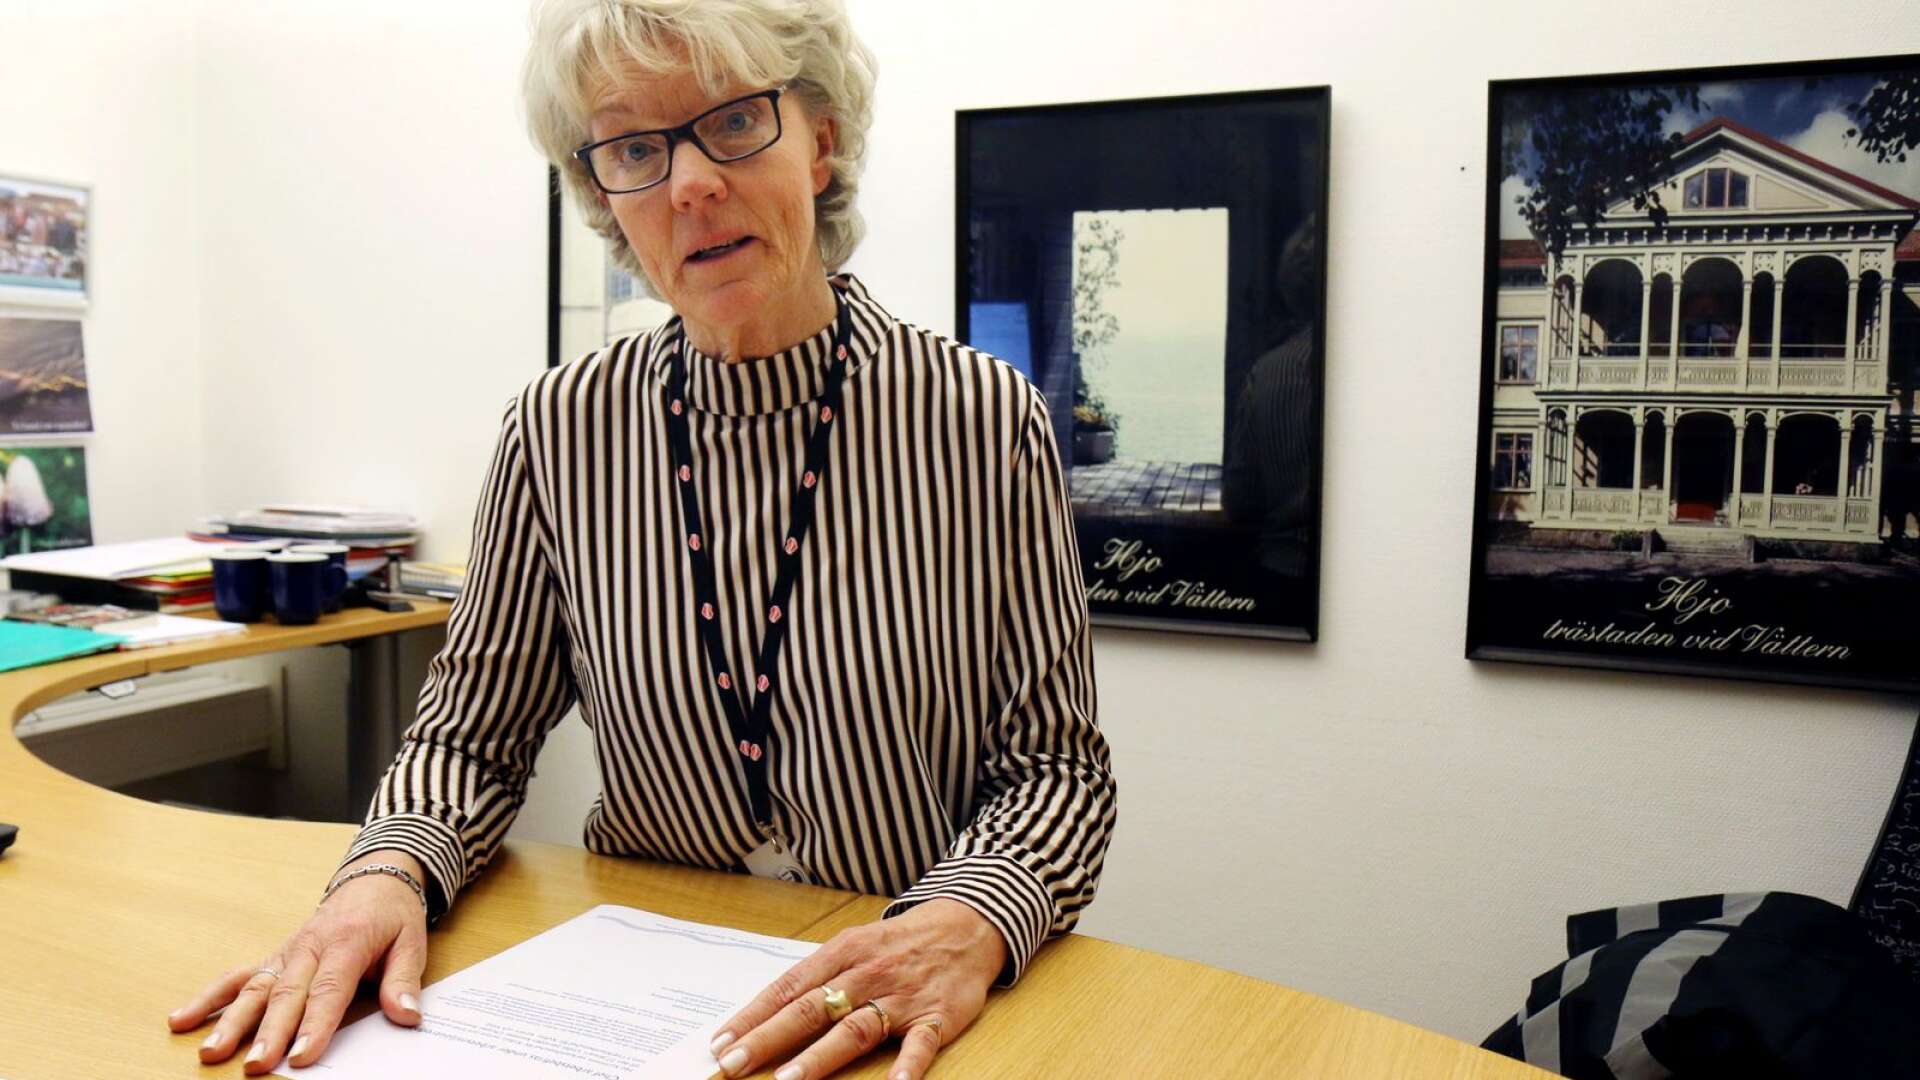 Kommundirektör Lisbeth Göthberg gick i pension första maj, men är nu tillbaka som tillförordnad rektor på Guldkroksskolans högstadie.